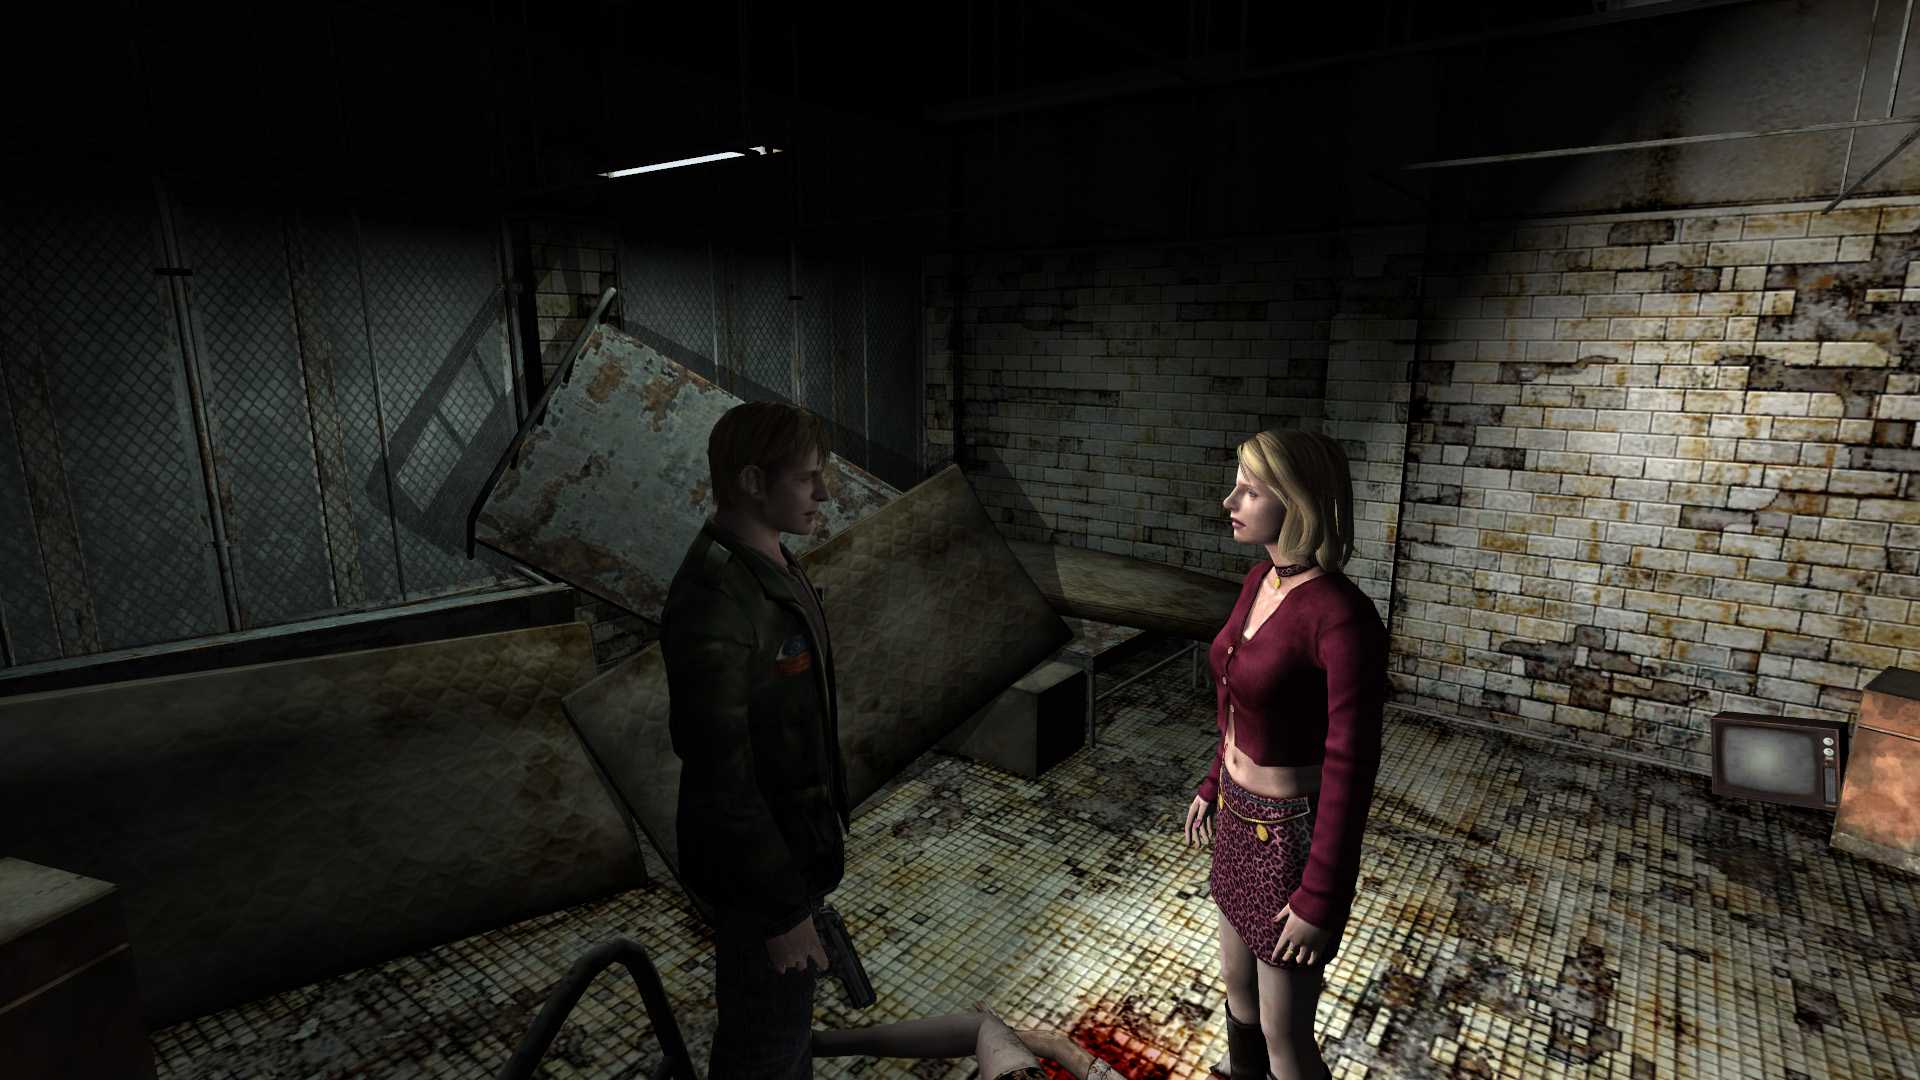 Узнайте в этом руководстве откуда монстры в Silent Hill, если вас по прежнему интересует данный вопрос, то читайте далее